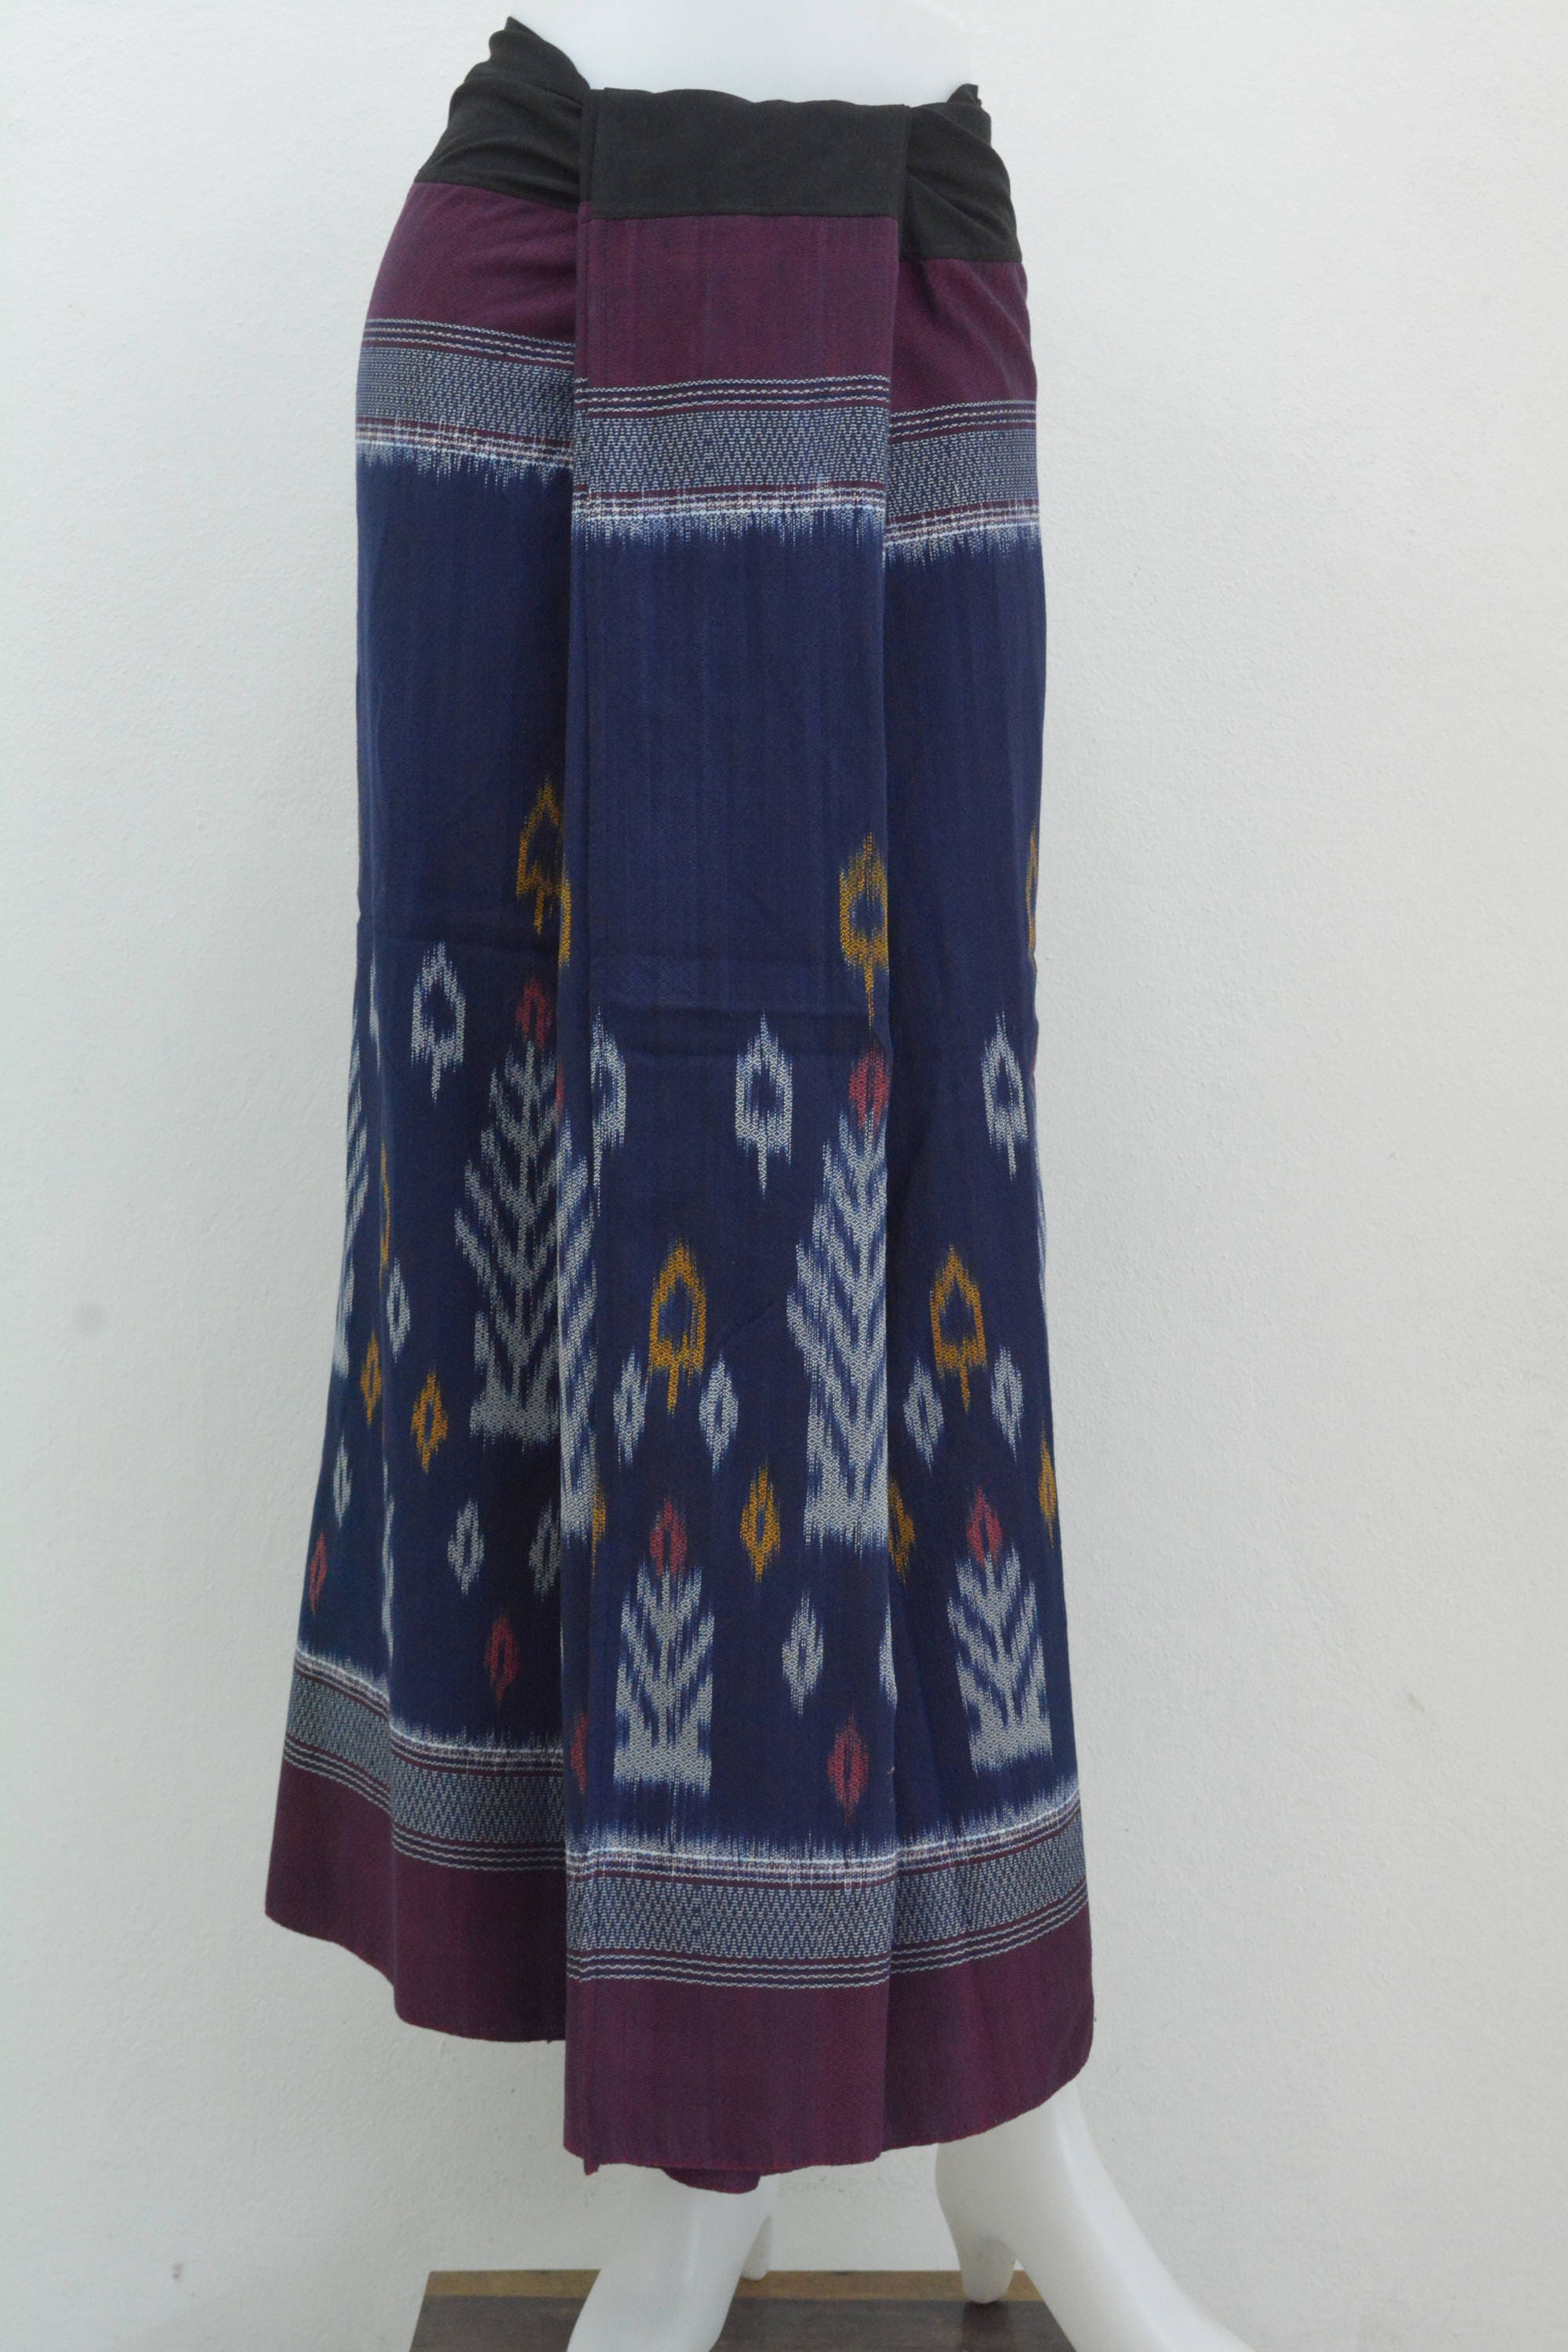 Sarong Skirt Sarong Dress Traditional Sarong Hand woven | Etsy